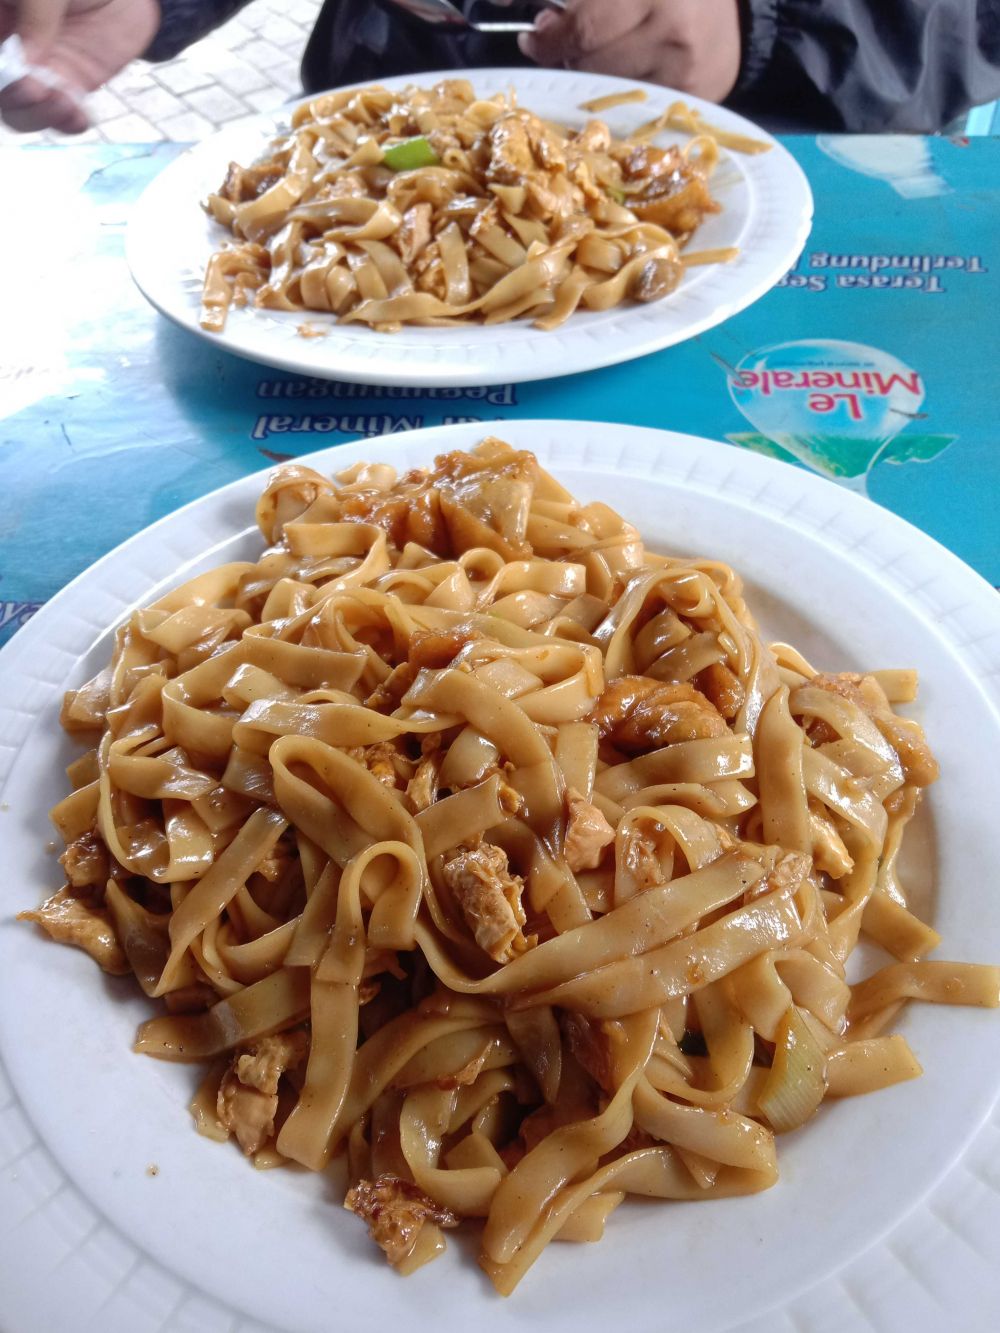 10 Kuliner di Kotabaru Jogja, dari Kaki Lima sampai Restoran